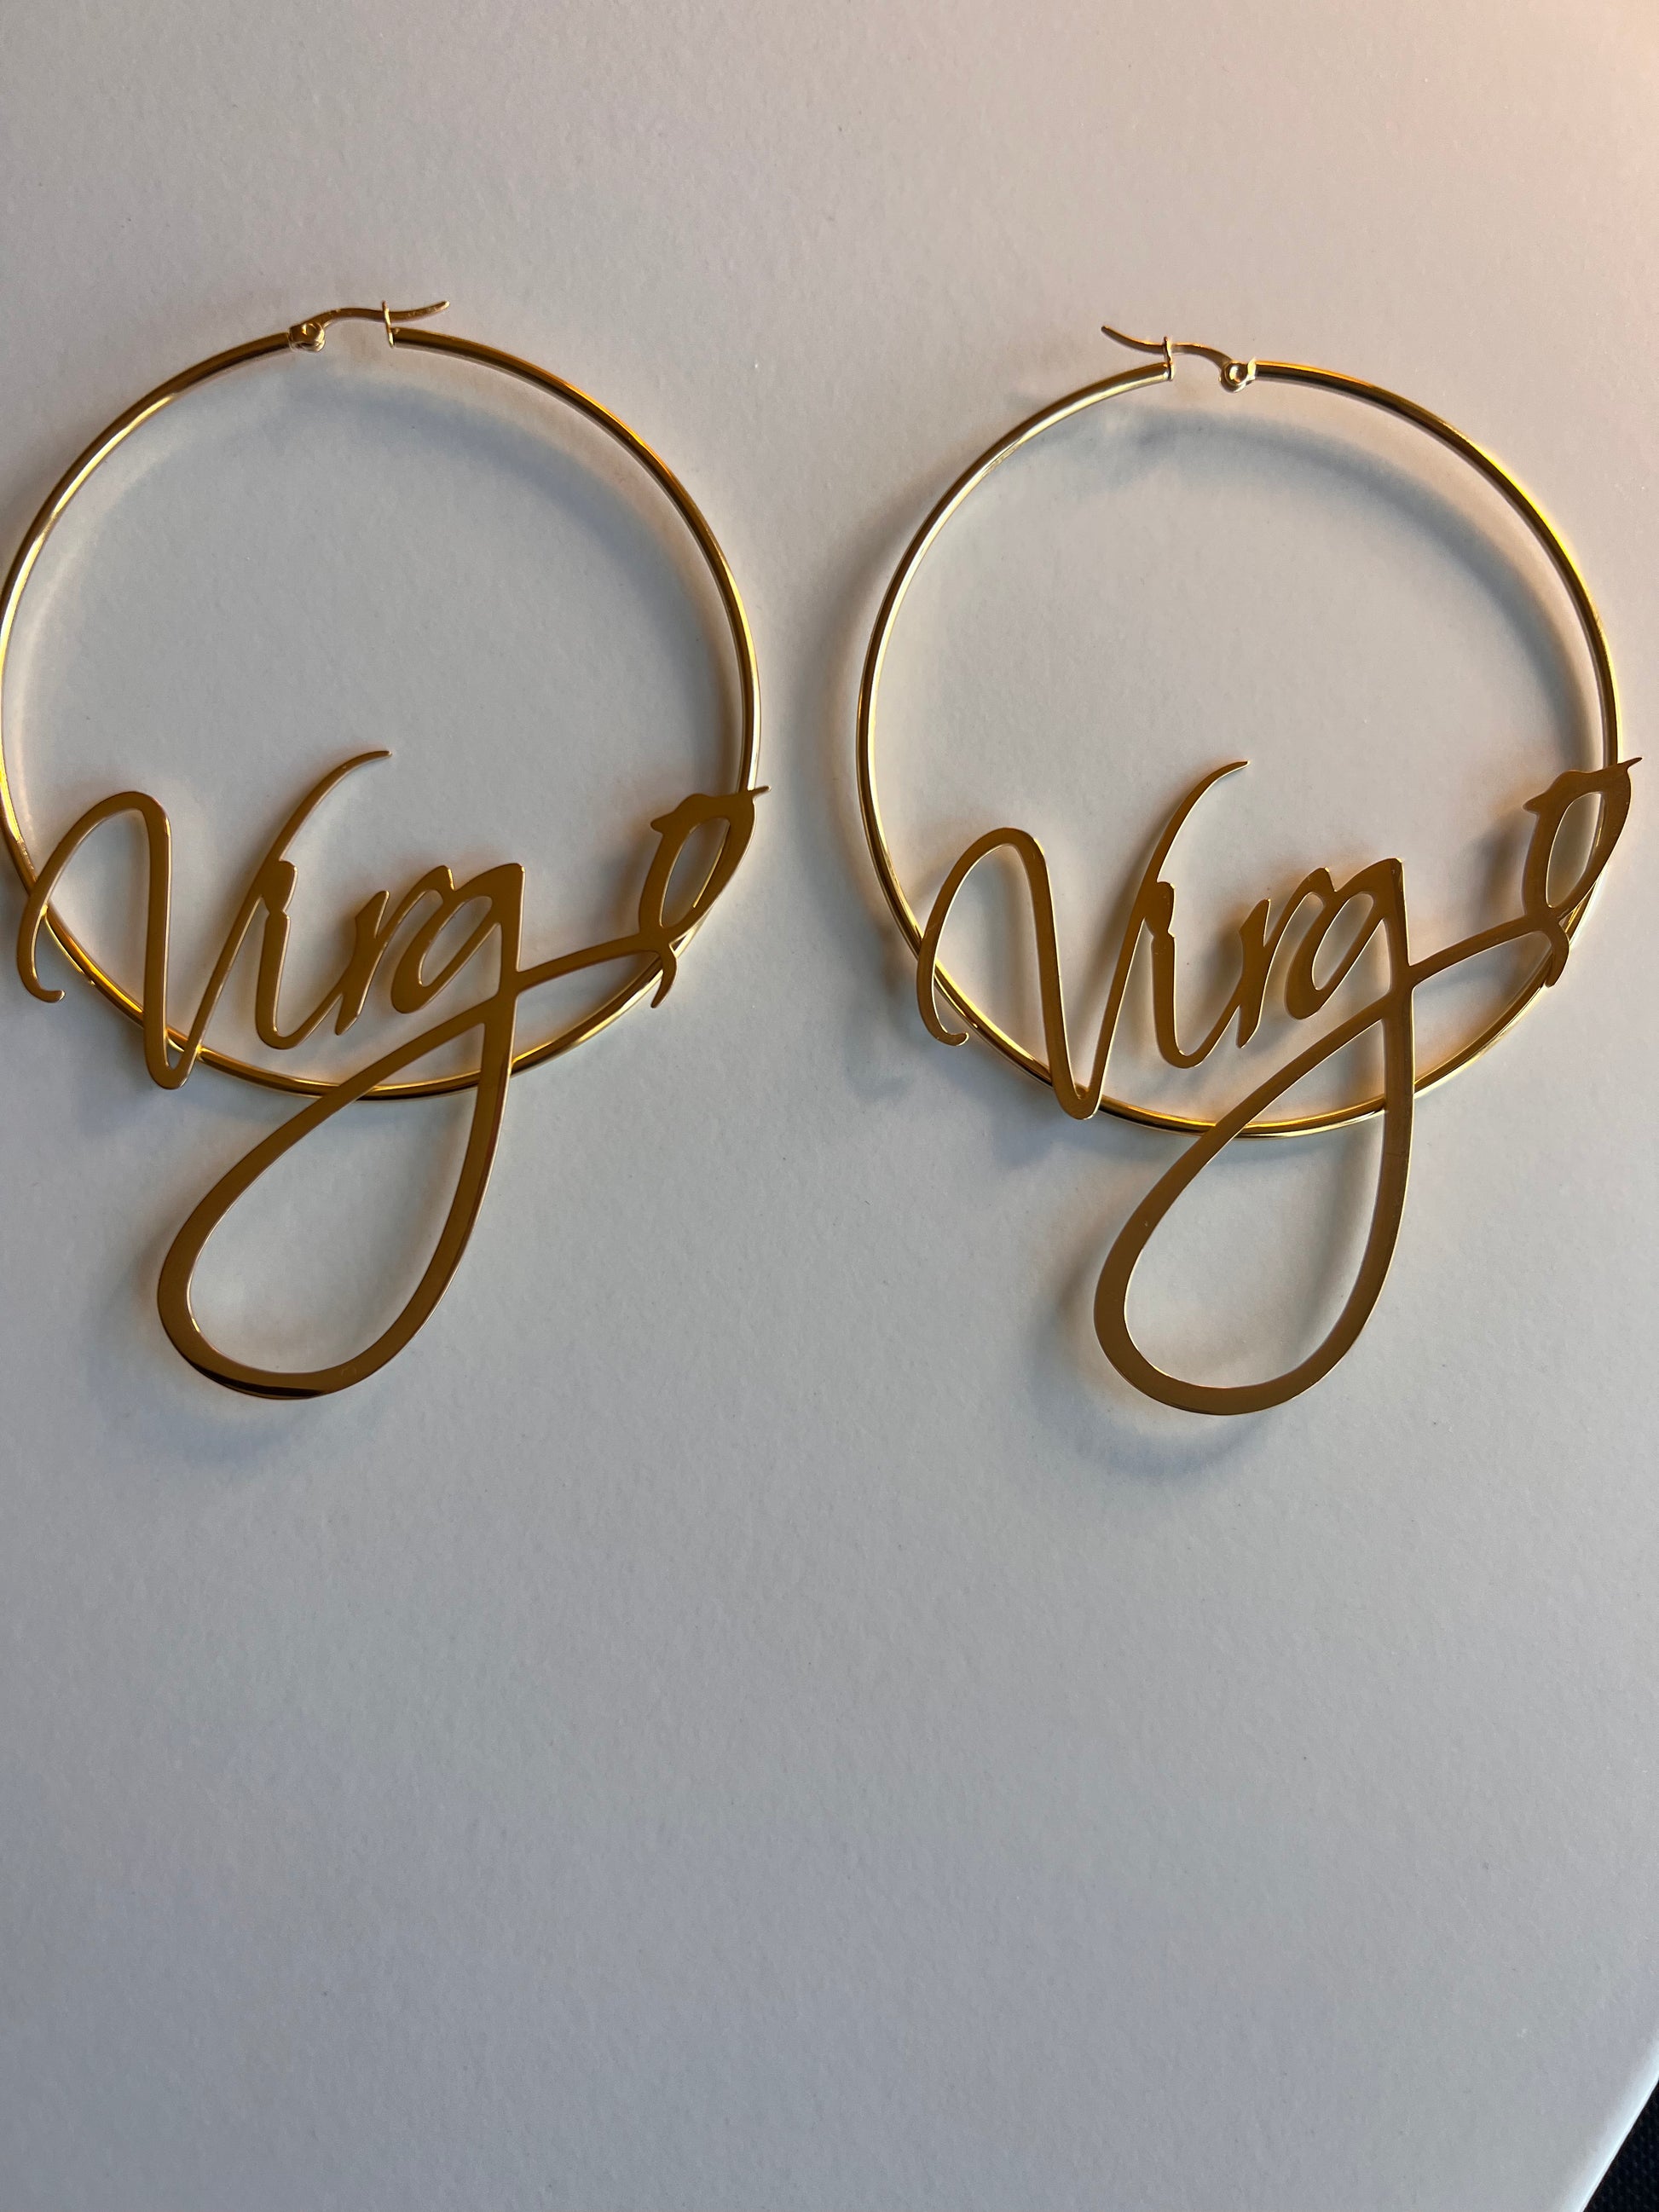 gold hoop earrings with zodiac sign written across the earrings